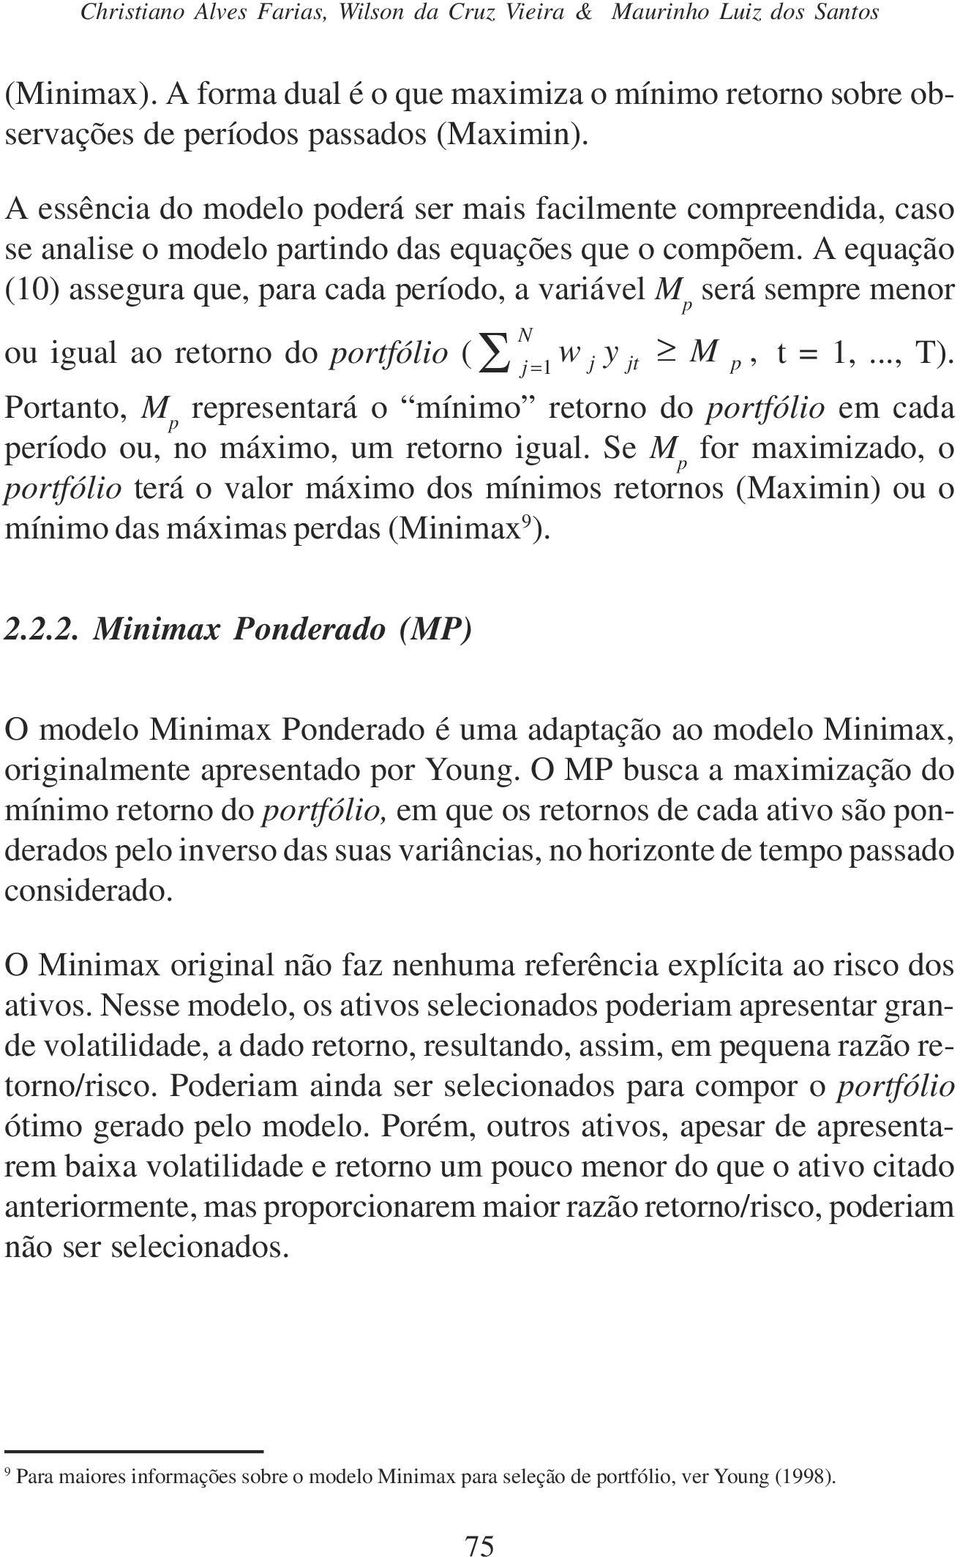 A equação (10) assegura que, para cada período, a variável M p será sempre menor ou igual ao retorno do portfólio ( = w j j y jt M 1 p, t = 1,..., T).